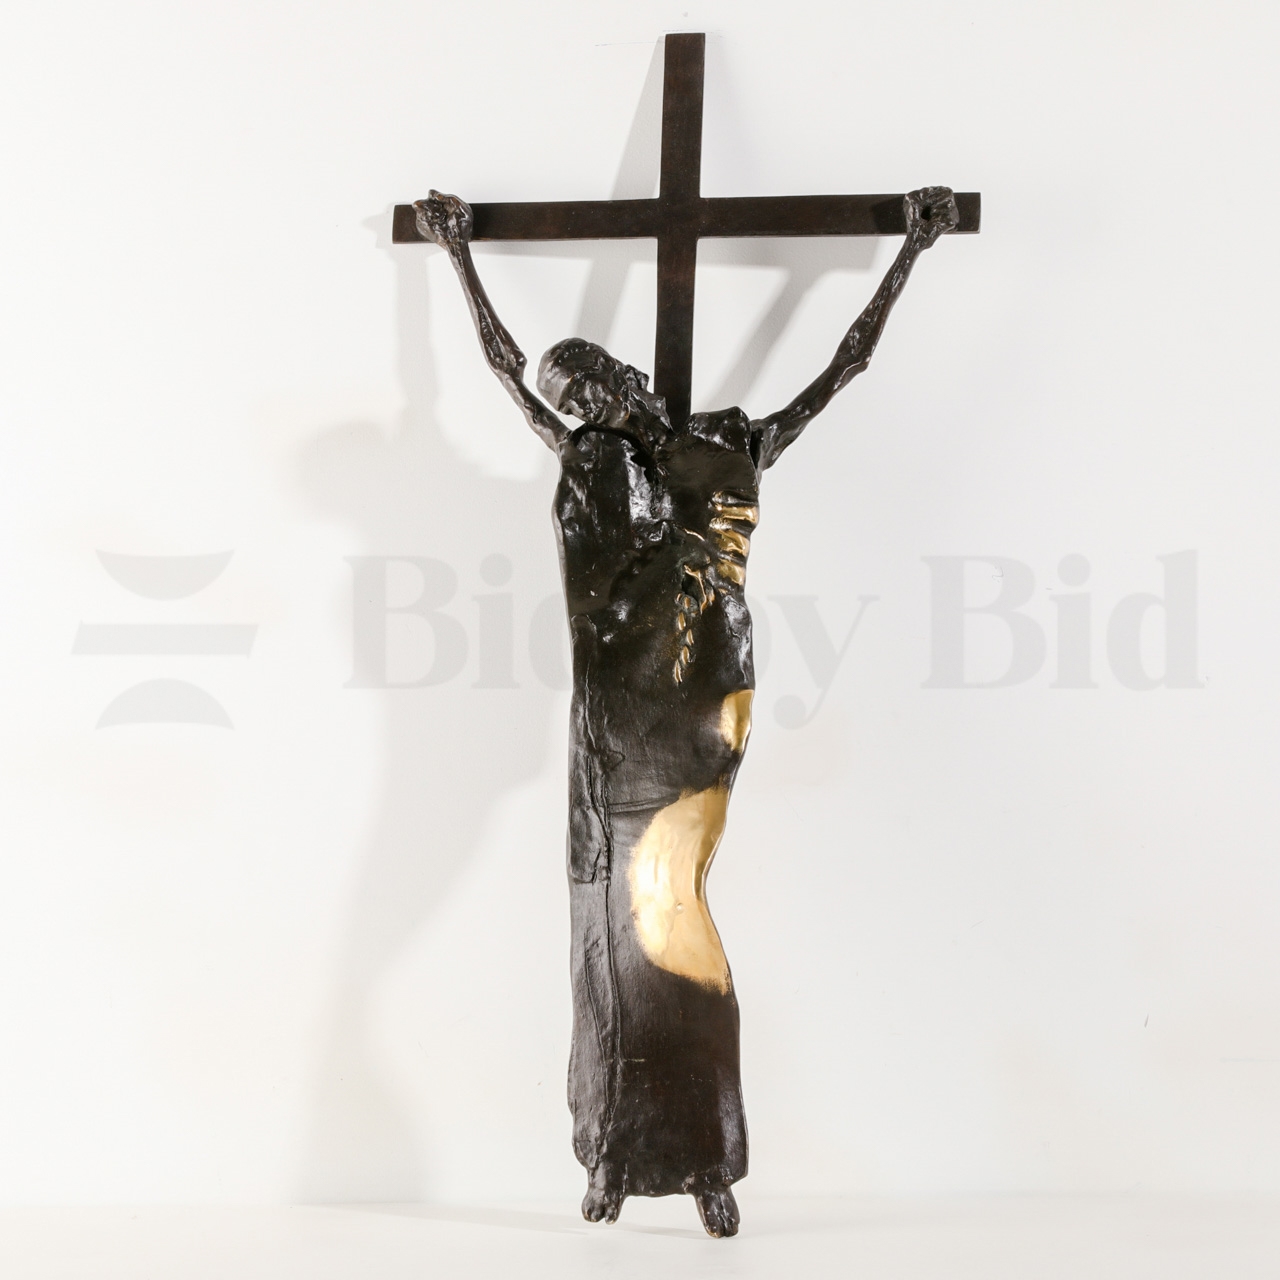 Artwork by José Rodrigues, "Jesus Cristo Crucificado", Made of bronze